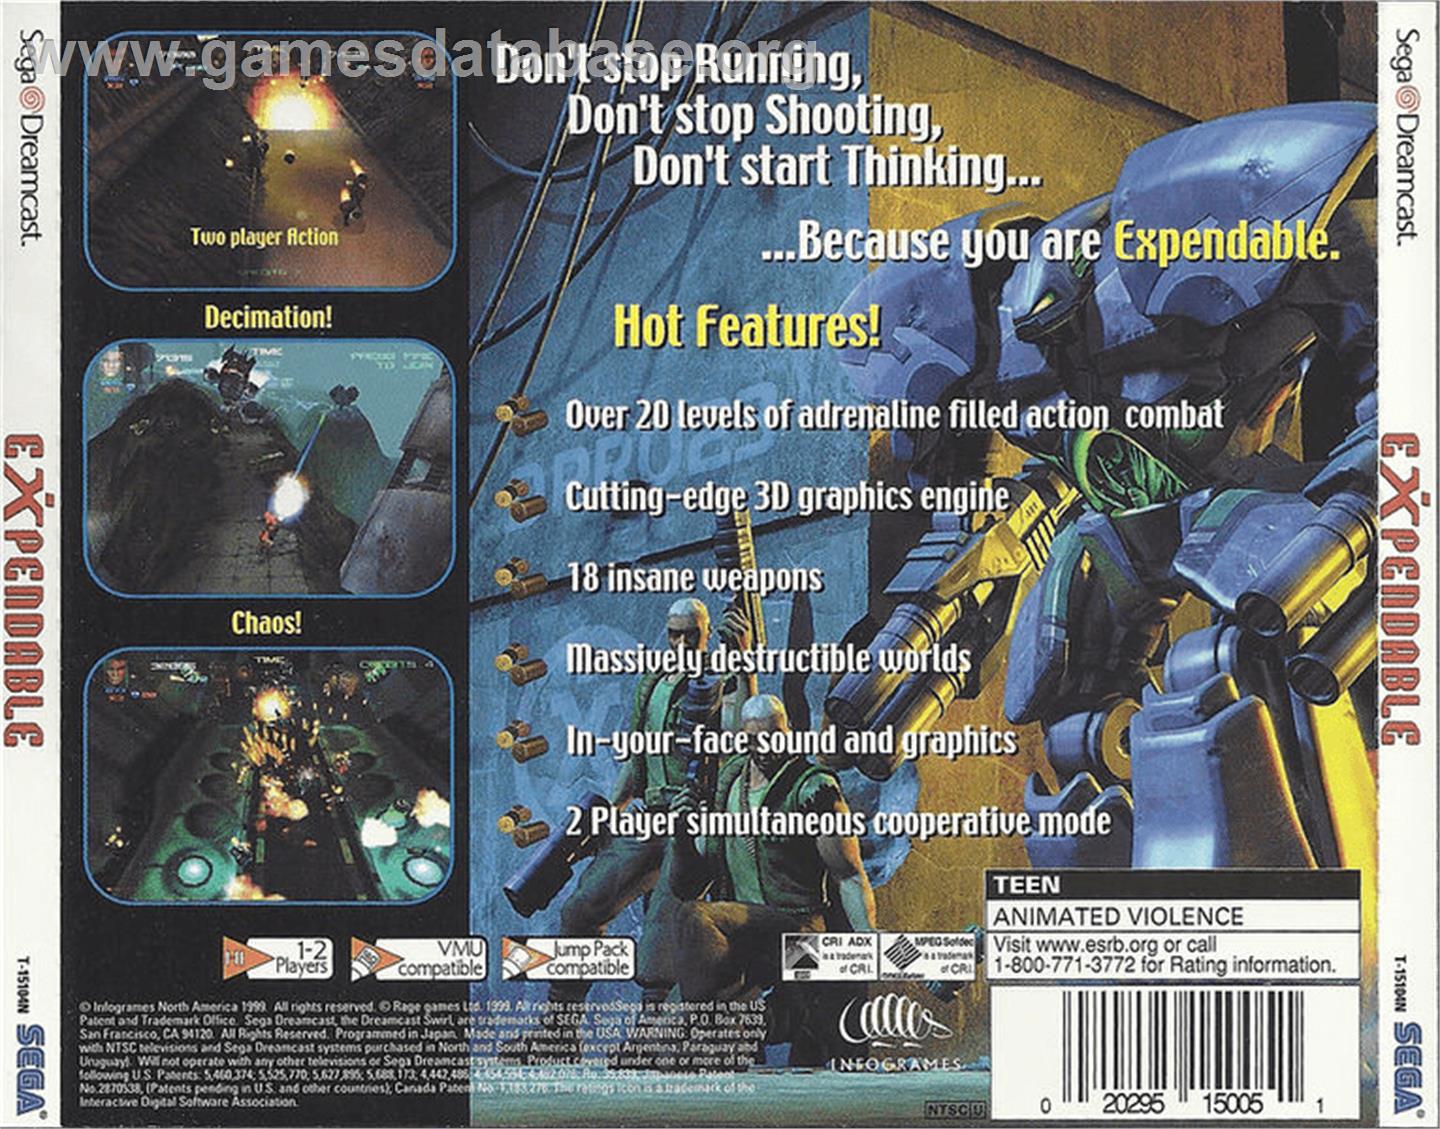 Millennium Soldier: Expendable - Sega Dreamcast - Artwork - Box Back